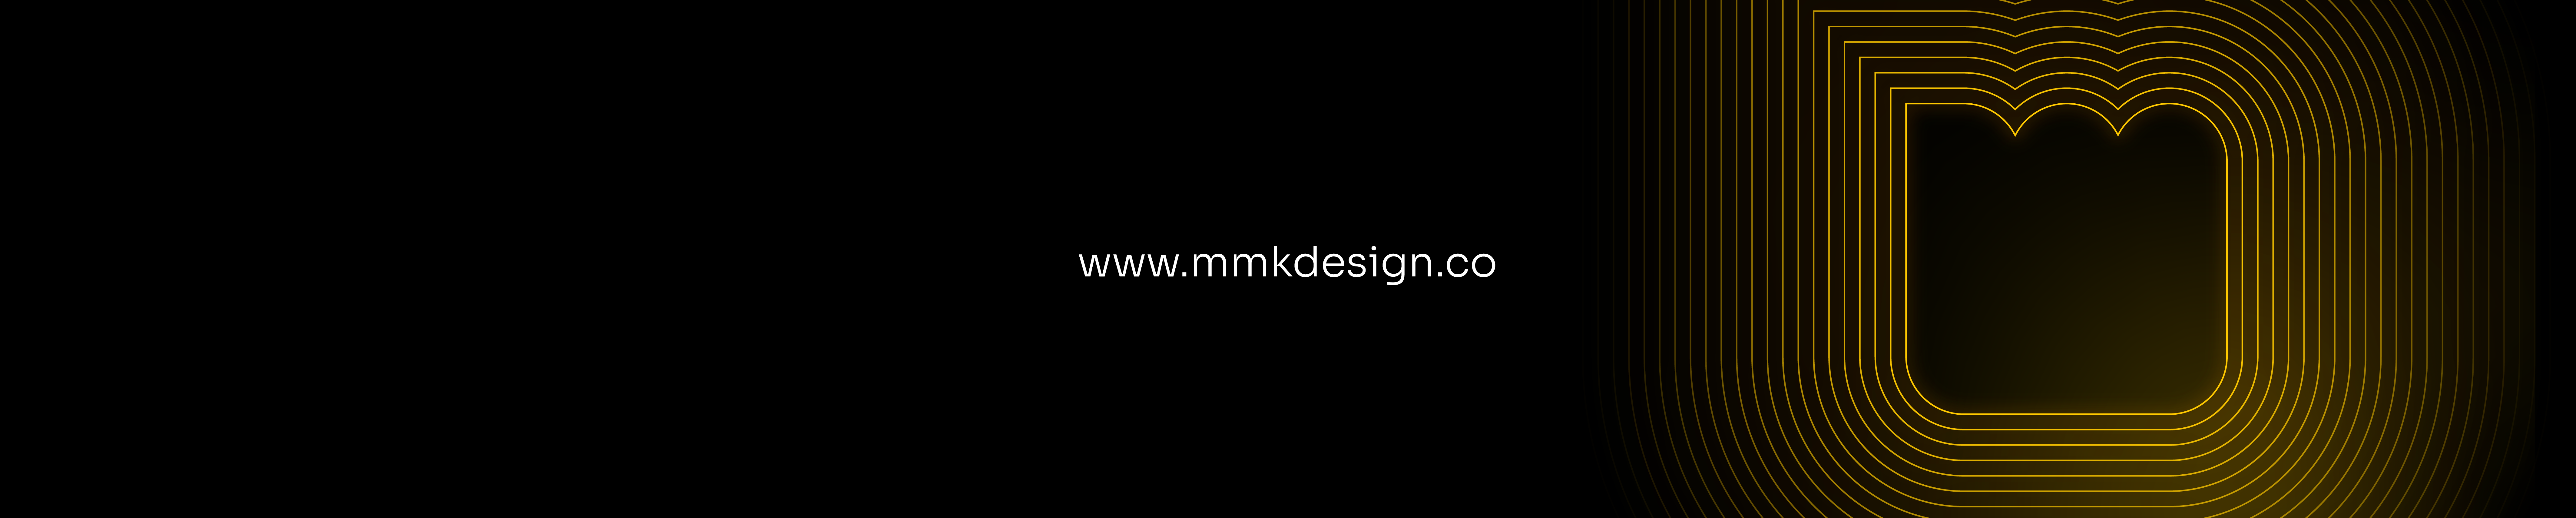 MMK Design's profile banner